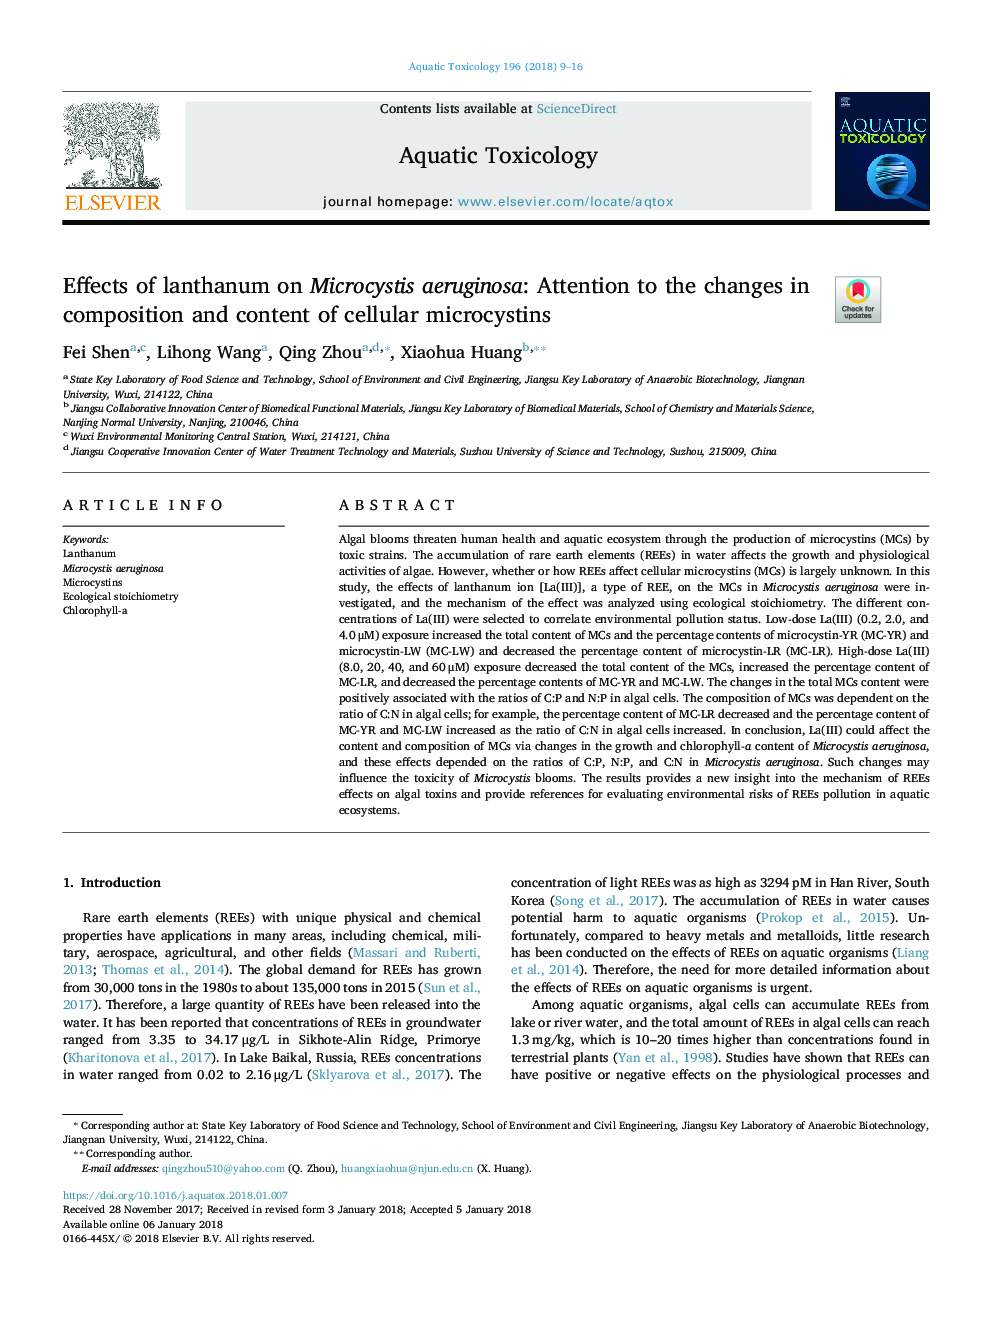 اثرات لانتانیم بر روی میکروسیستی آئروژینوزا: توجه به تغییرات ترکیب و محتوای میکرو سستین های 